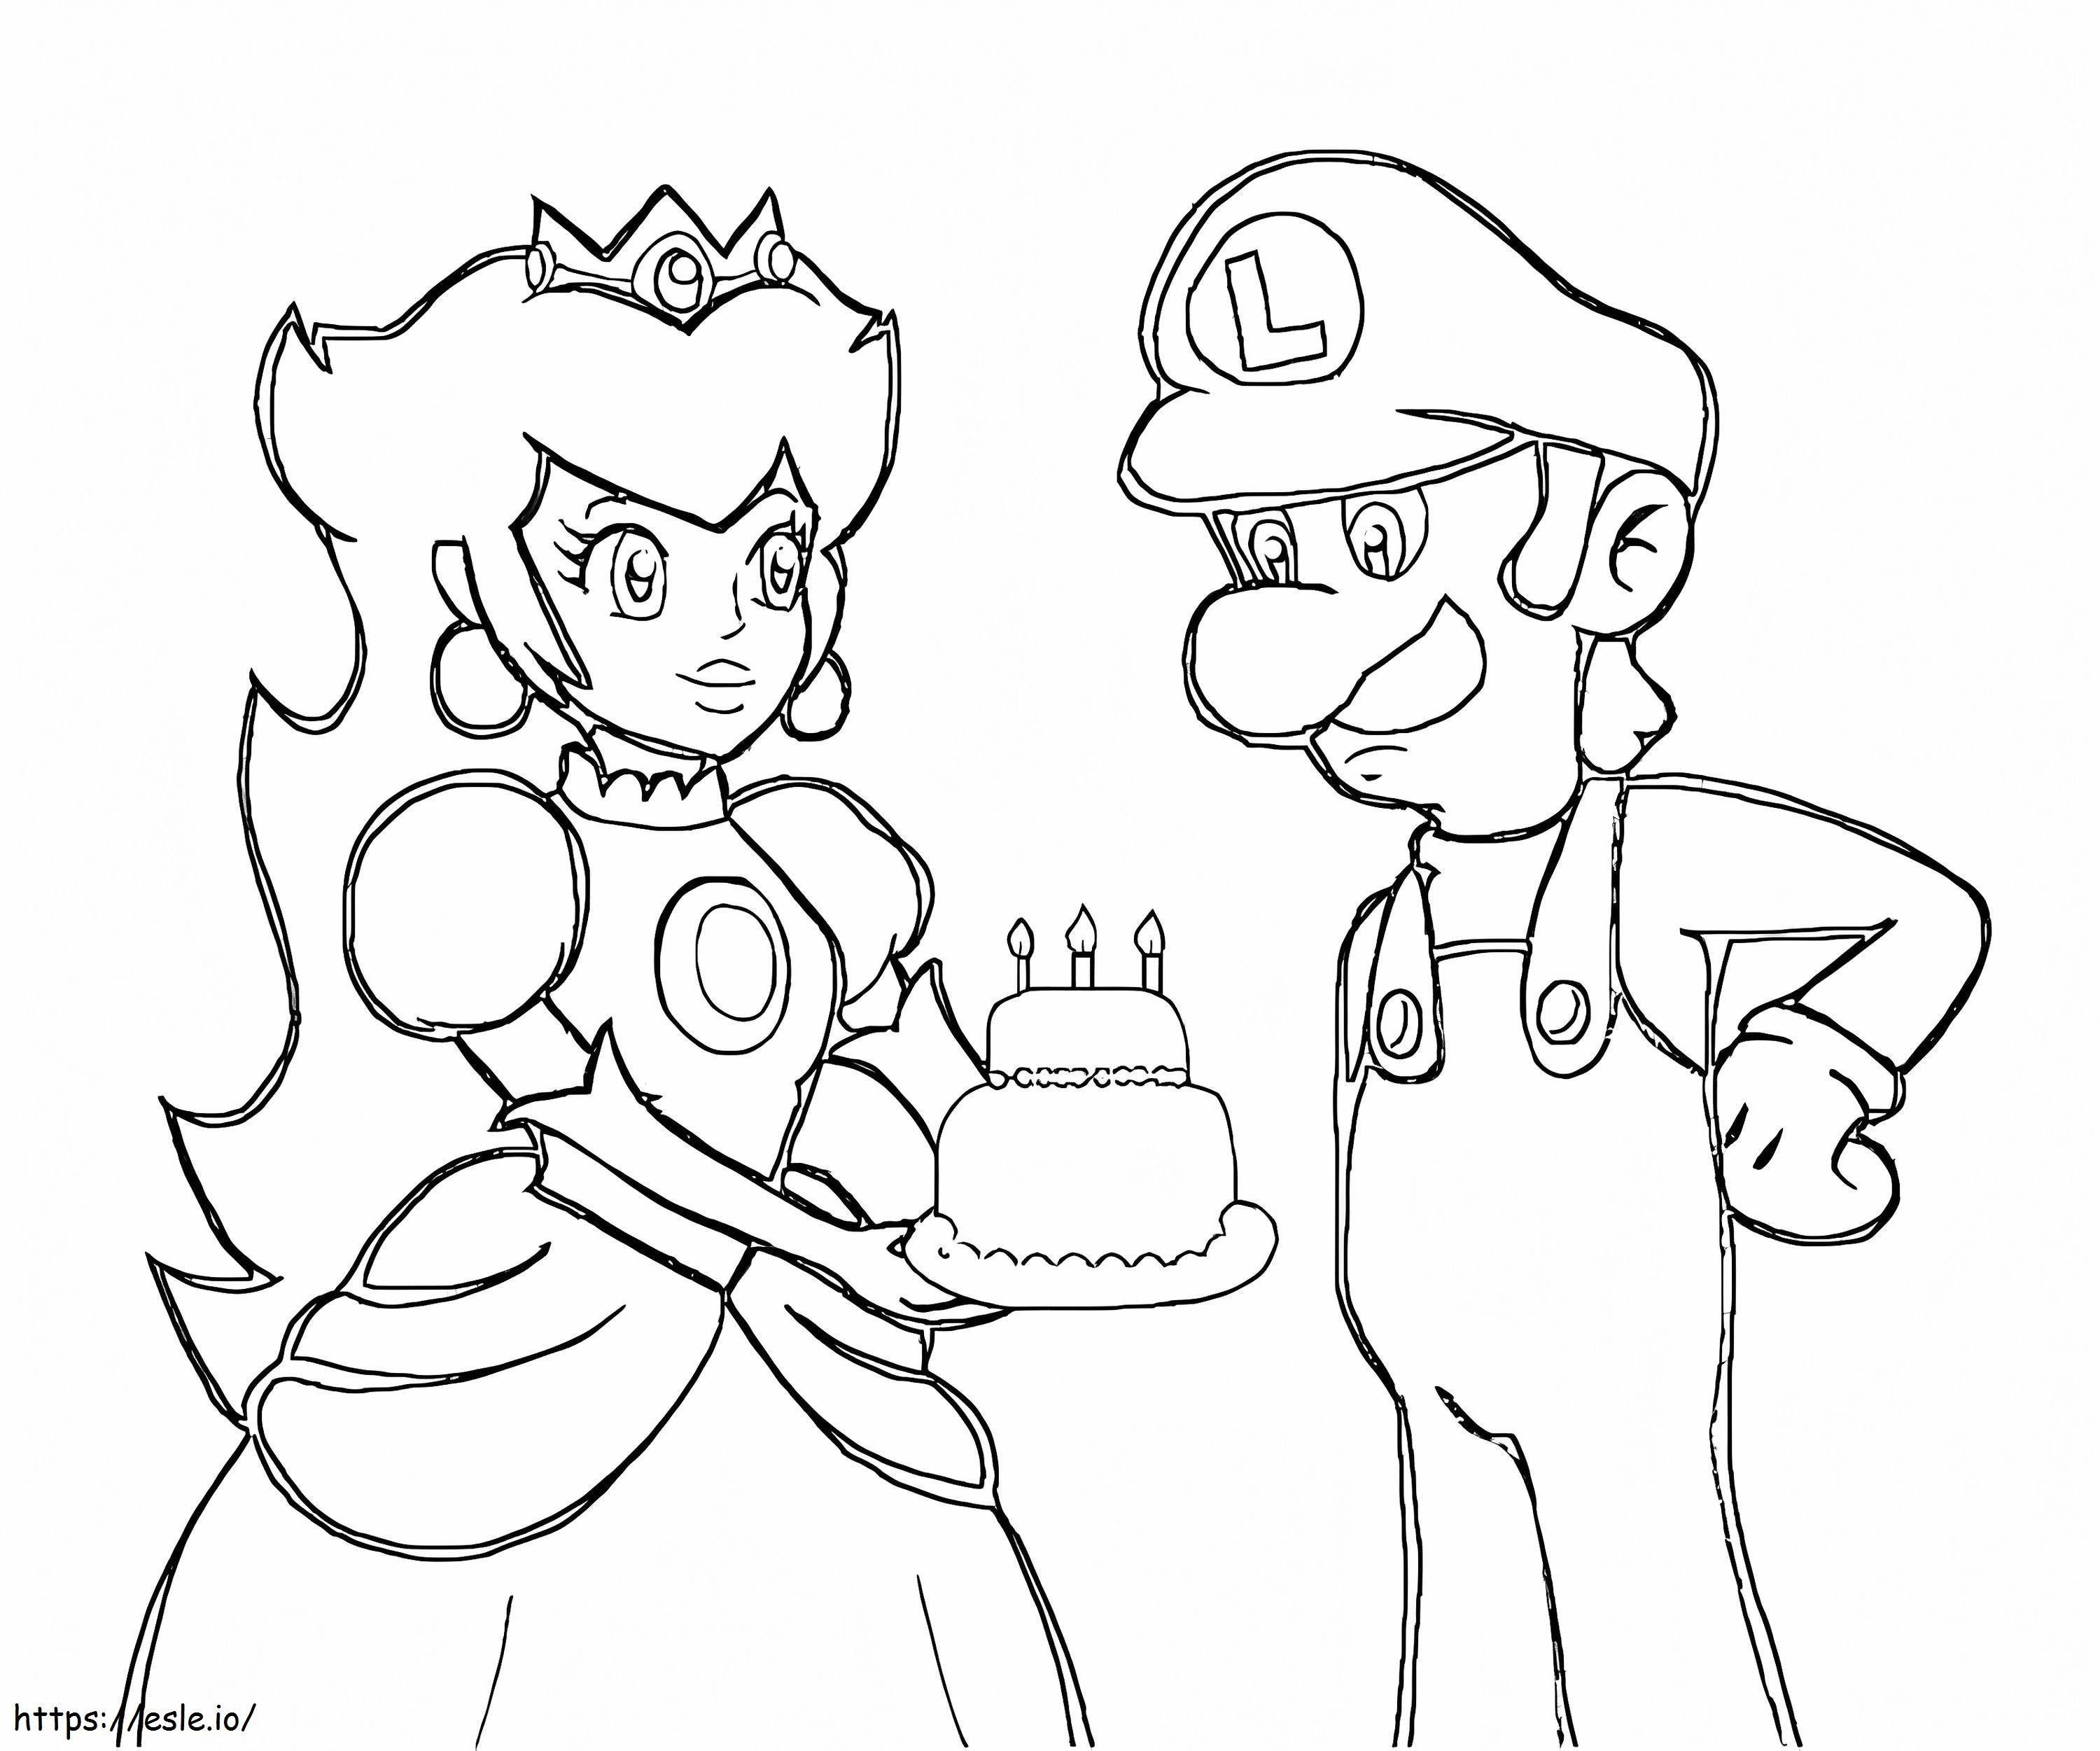 Pfirsich mit Geburtstagstorte und Luigi zeichnen ausmalbilder